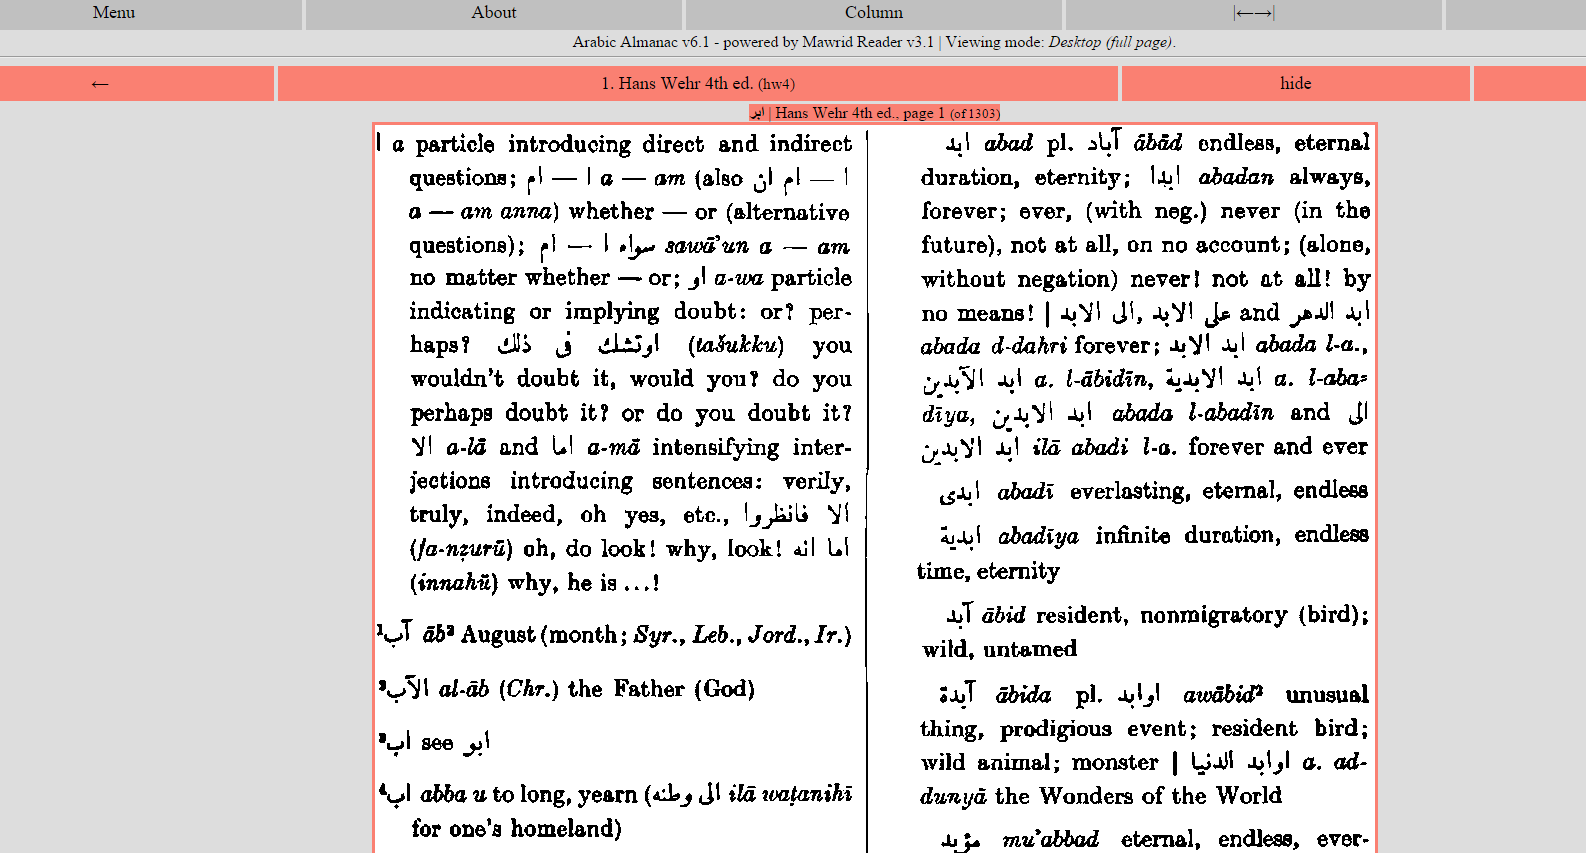 Arabic Almanac Online Dictionary